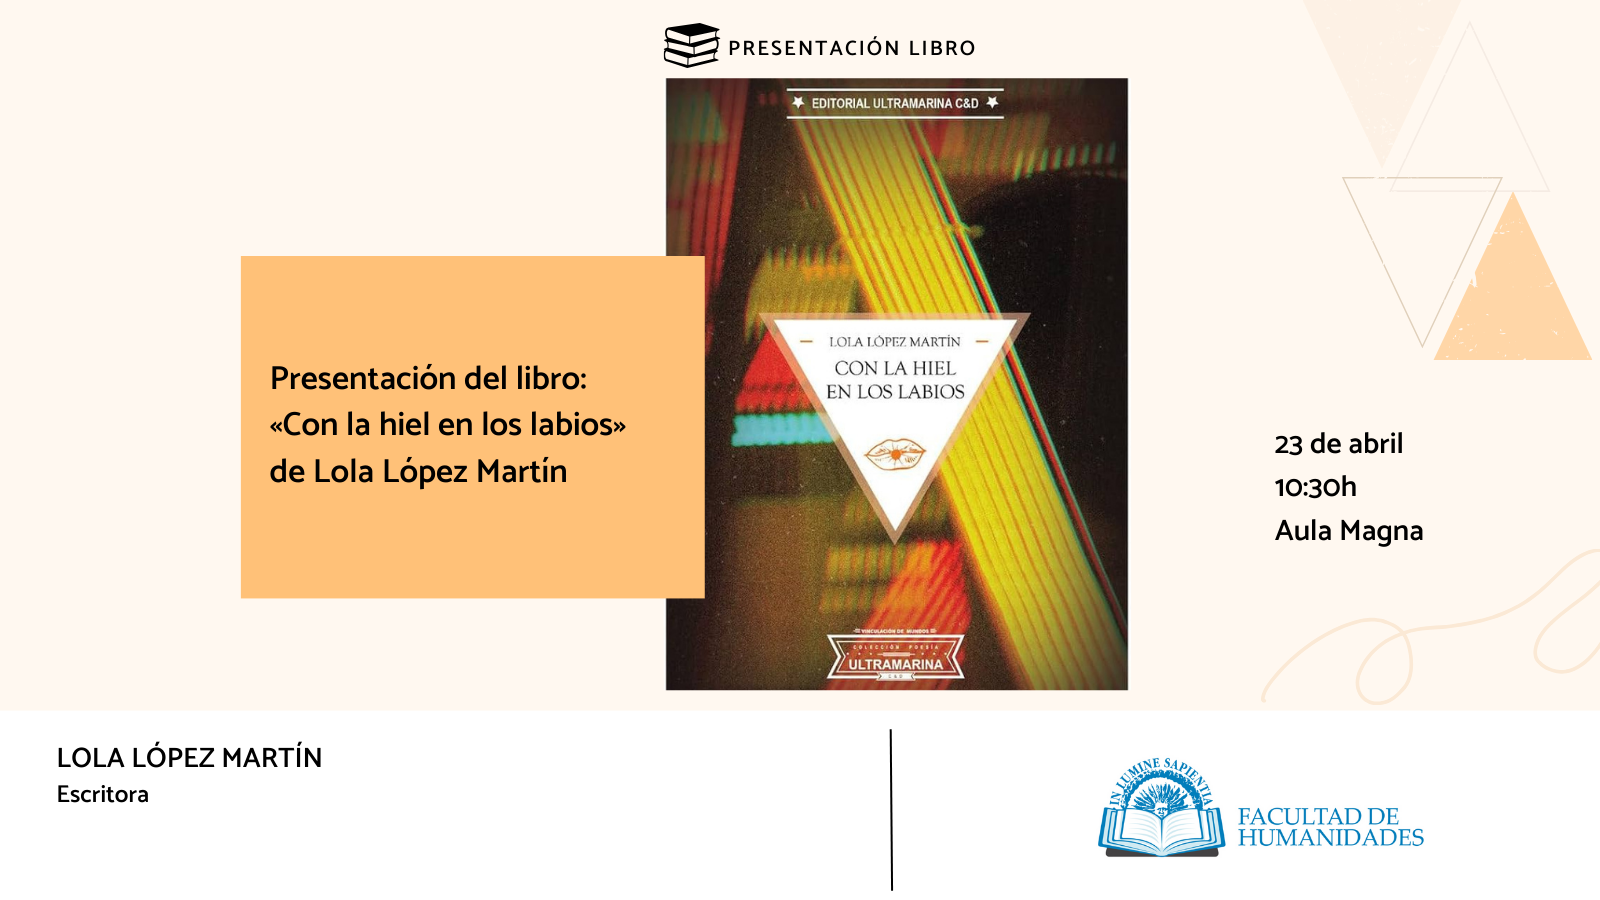 La Facultad de Humanidades y Javier Fornieles organizan la presentación del libro: «Con la hiel en los labios» de Lola López Martín